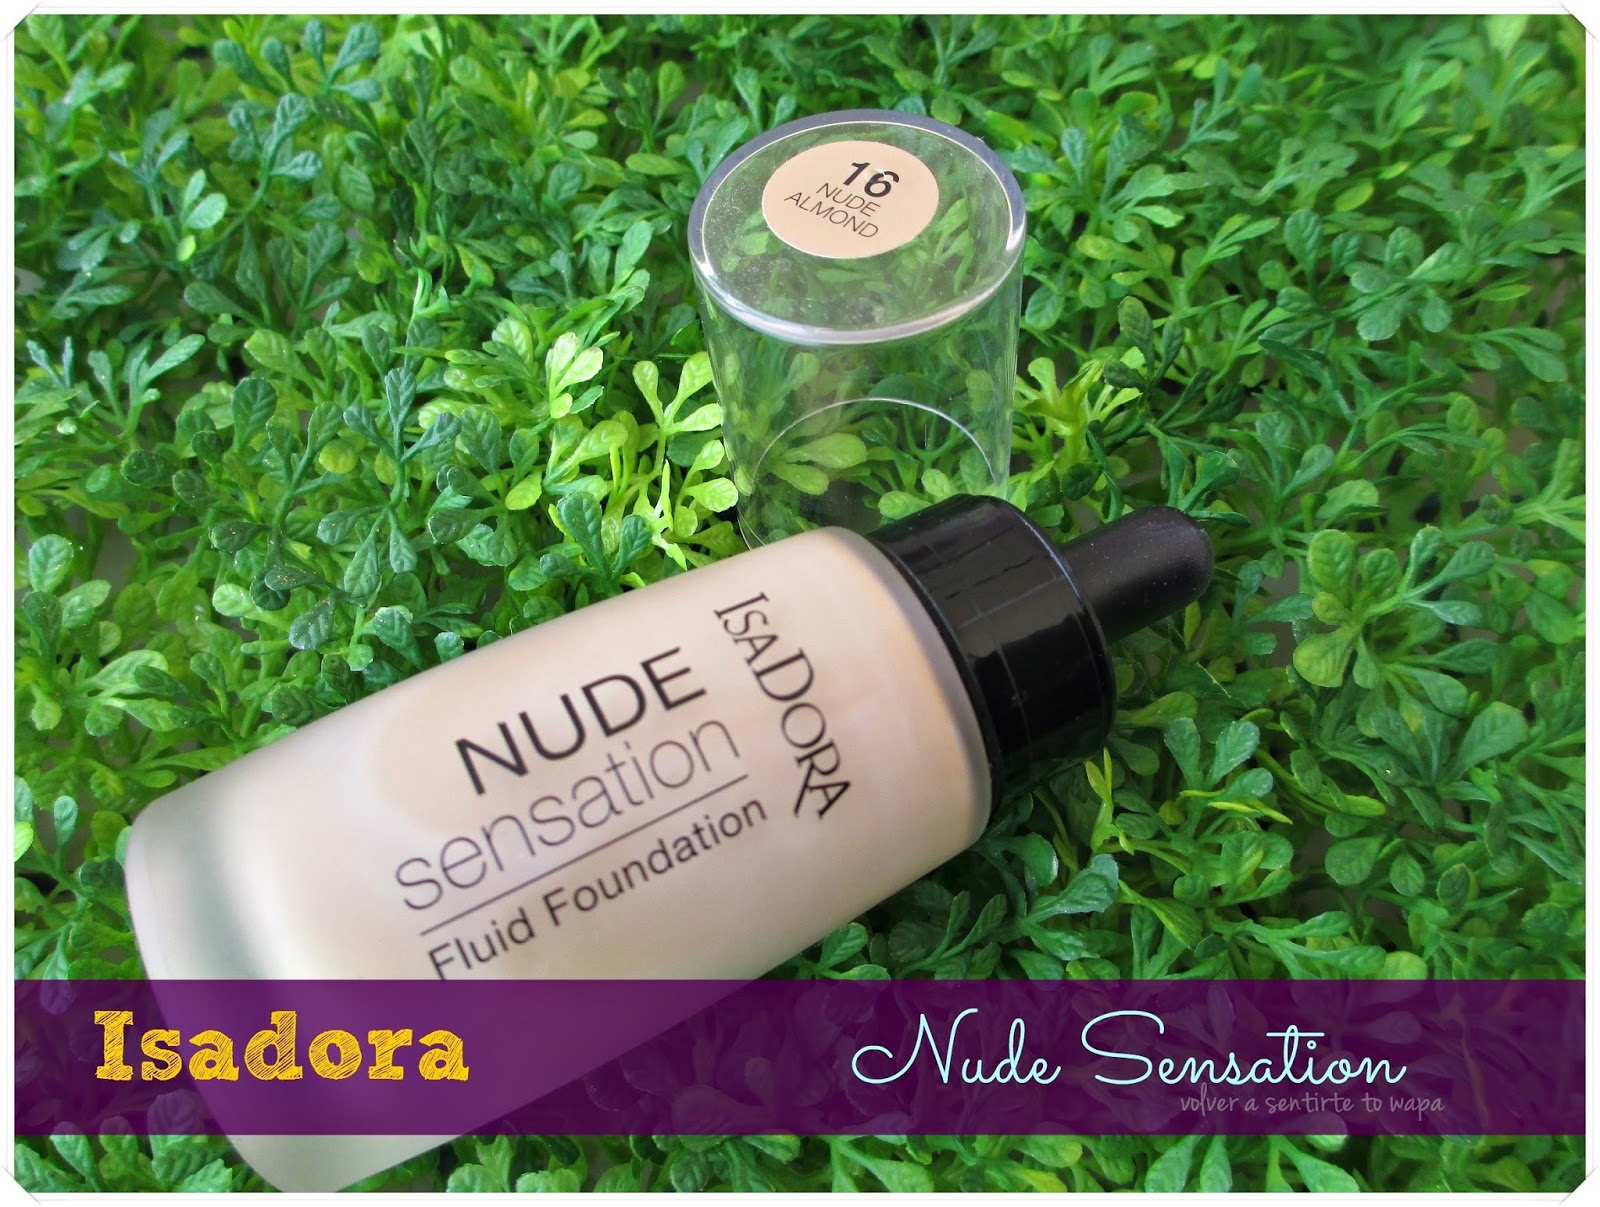 Nude Sensation Fluid Fiundation de Isadora - 16 Nude Almond